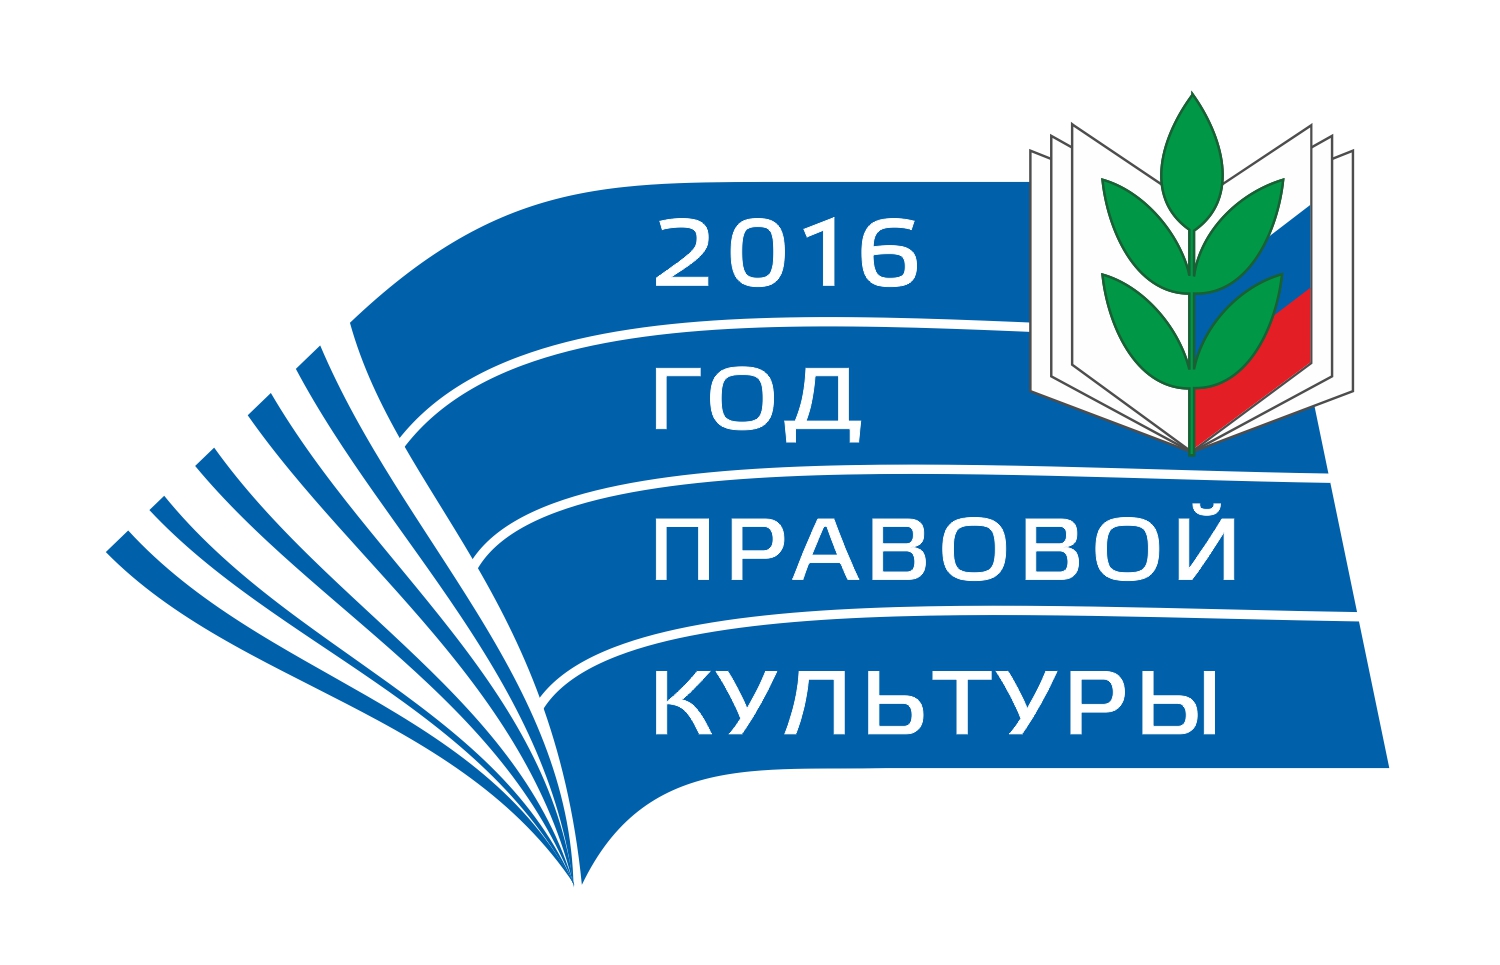 Центральный Совет Профсоюза объявил 2016 год - "Годом правовой культуры в Профсоюзе"